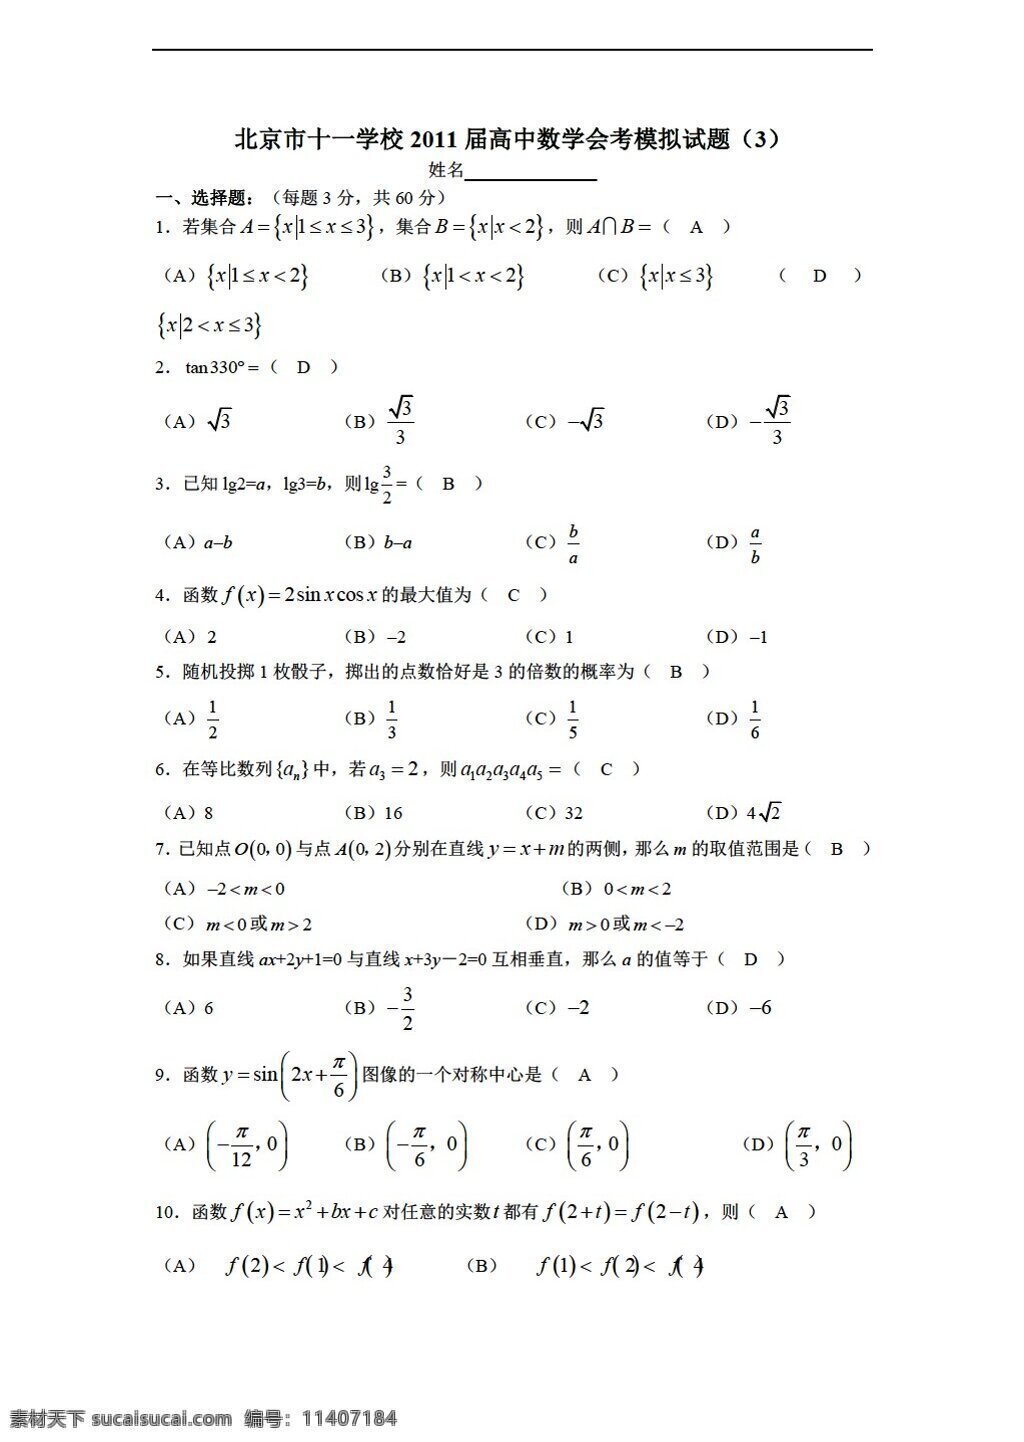 数学 会考 专区 北京市 十 学校 模拟试题 含 答案 会考专区 模拟试卷 试卷